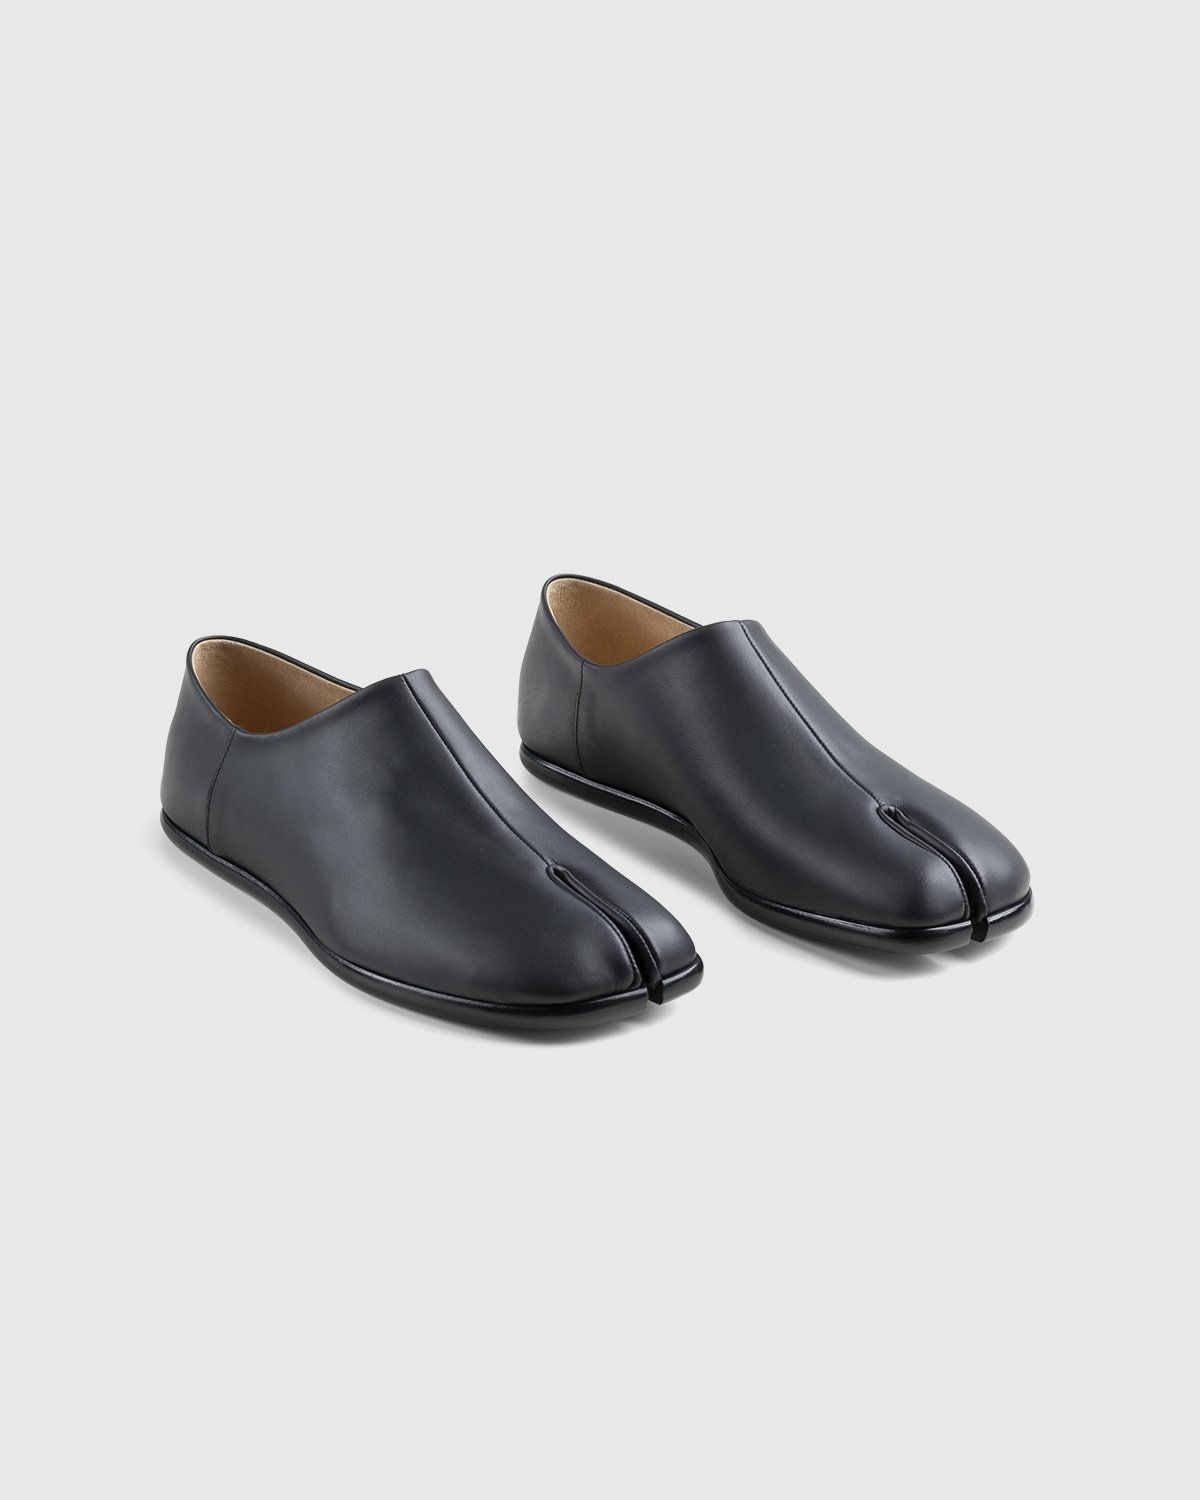 Maison Margiela - Tabi Slip On Black - Footwear - Black - Image 3